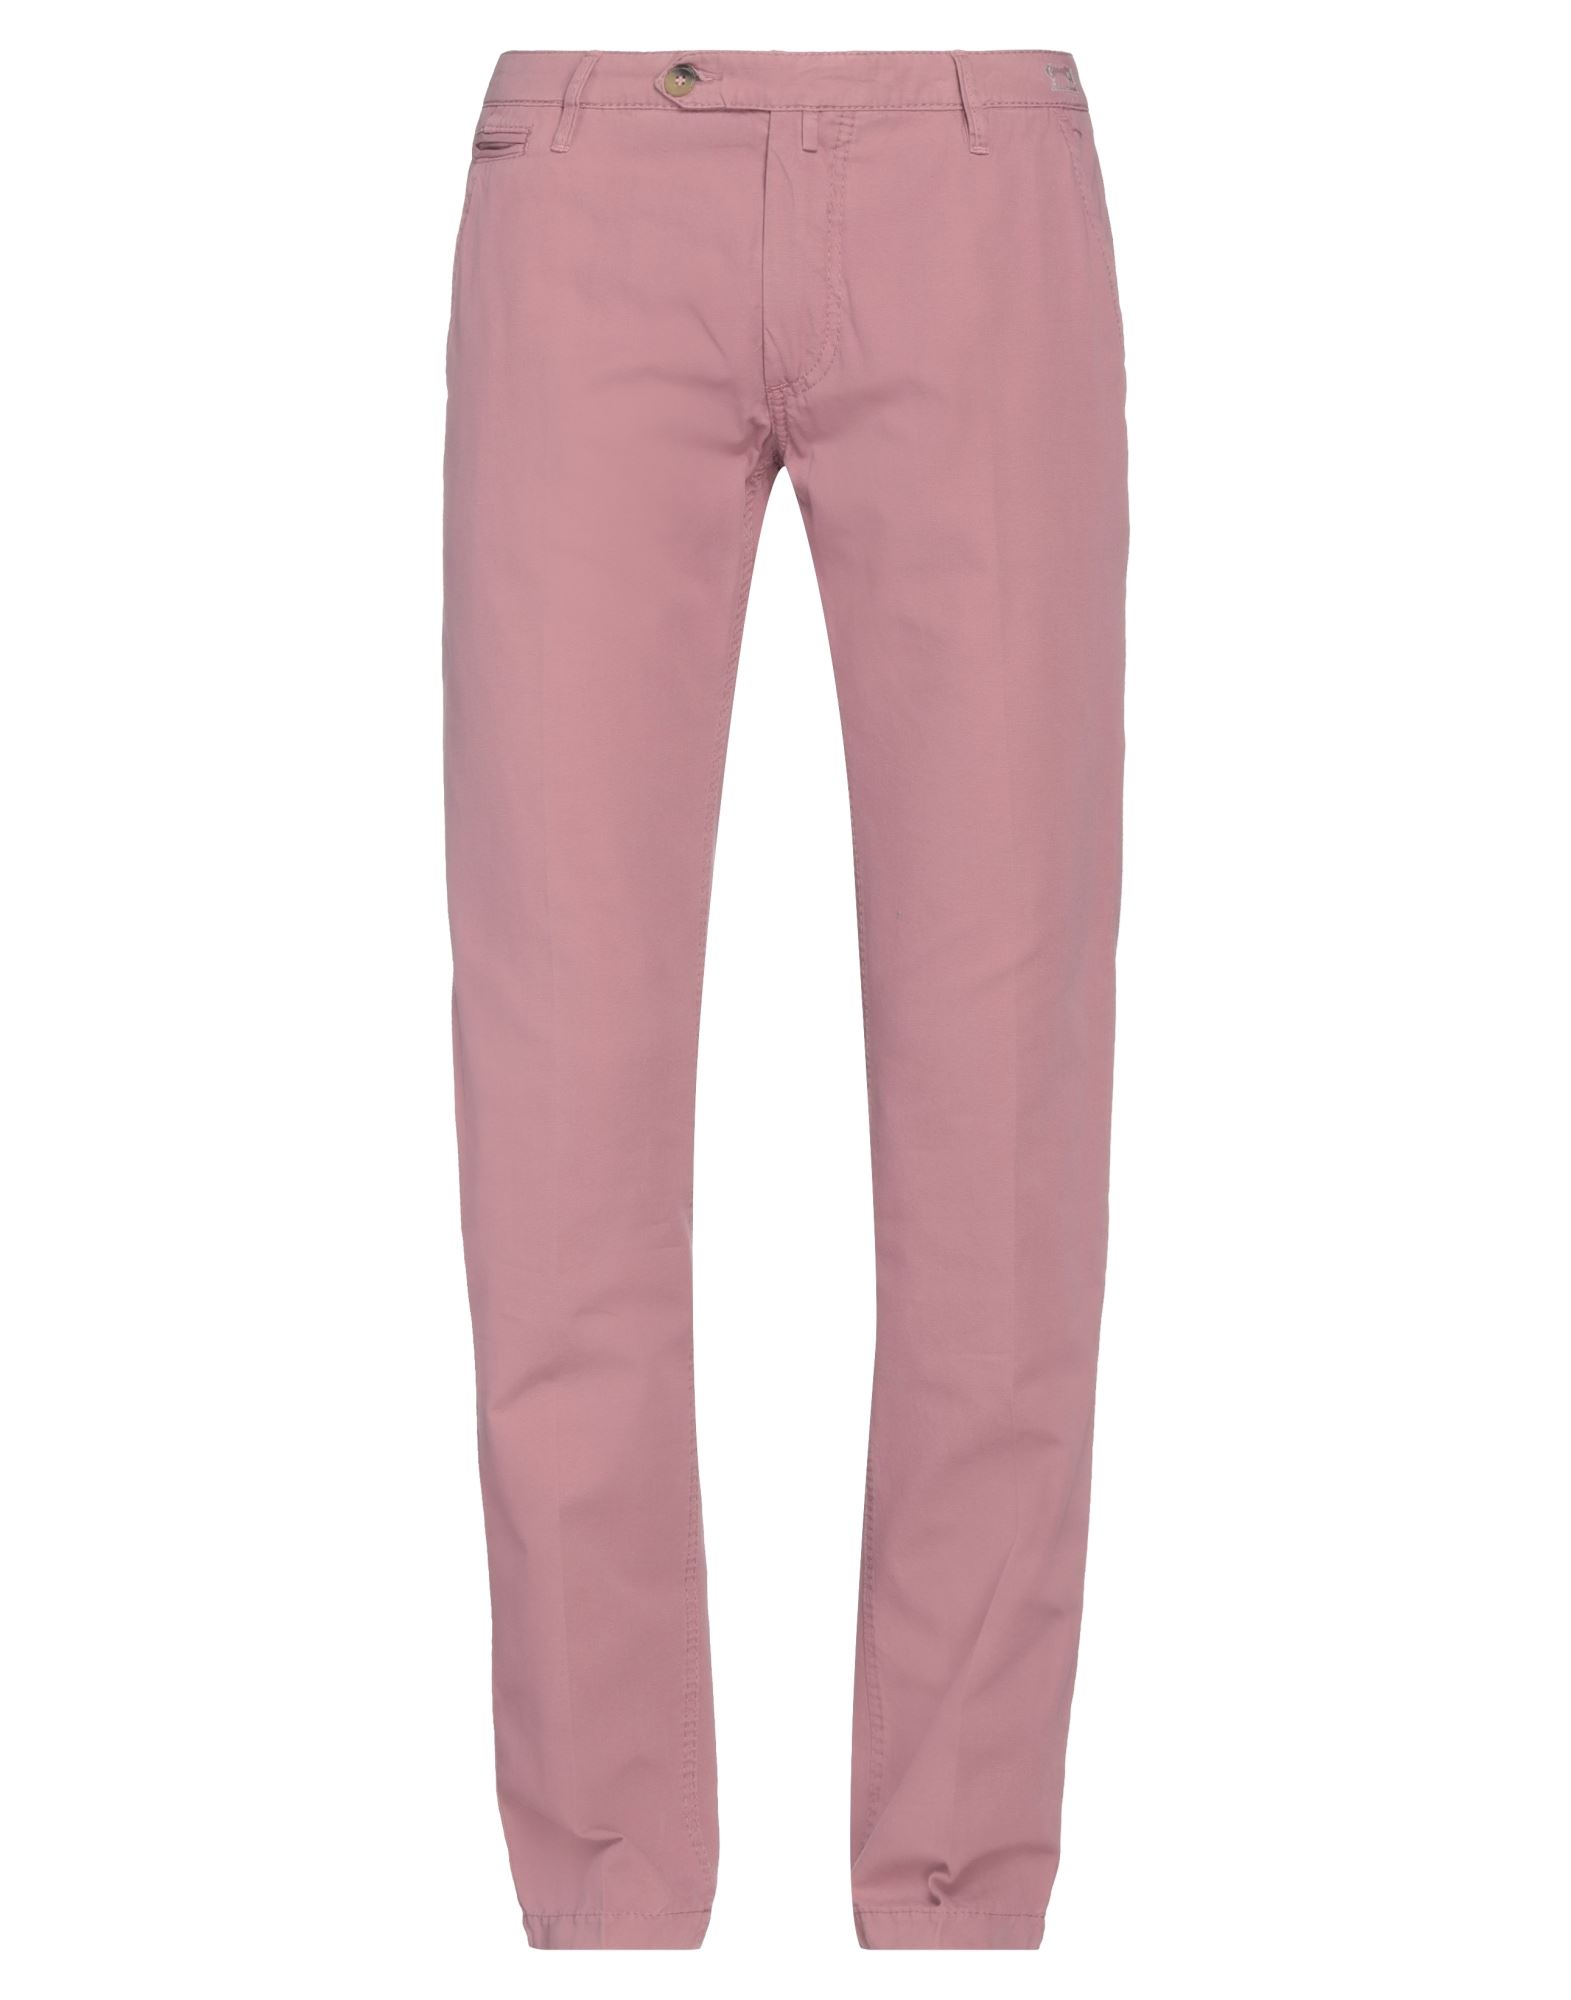 Shop Jacob Cohёn Man Pants Pastel Pink Size 33 Cotton